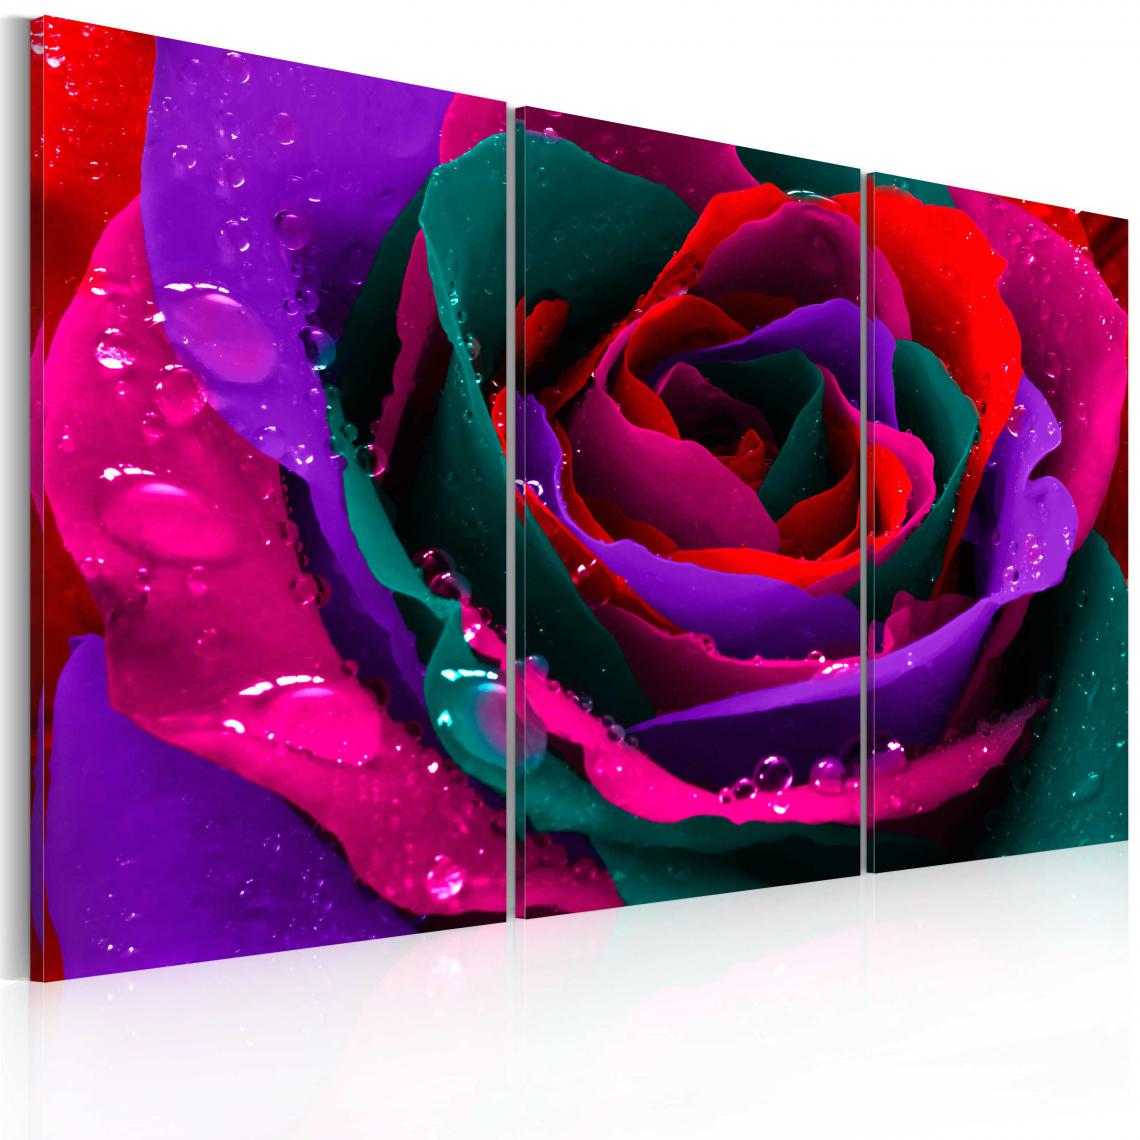 Decoshop26 - Tableau sur toile en 3 panneaux décoration murale image imprimée cadre en bois à suspendre Rose irisée 120x80 cm 11_0005710 - Tableaux, peintures